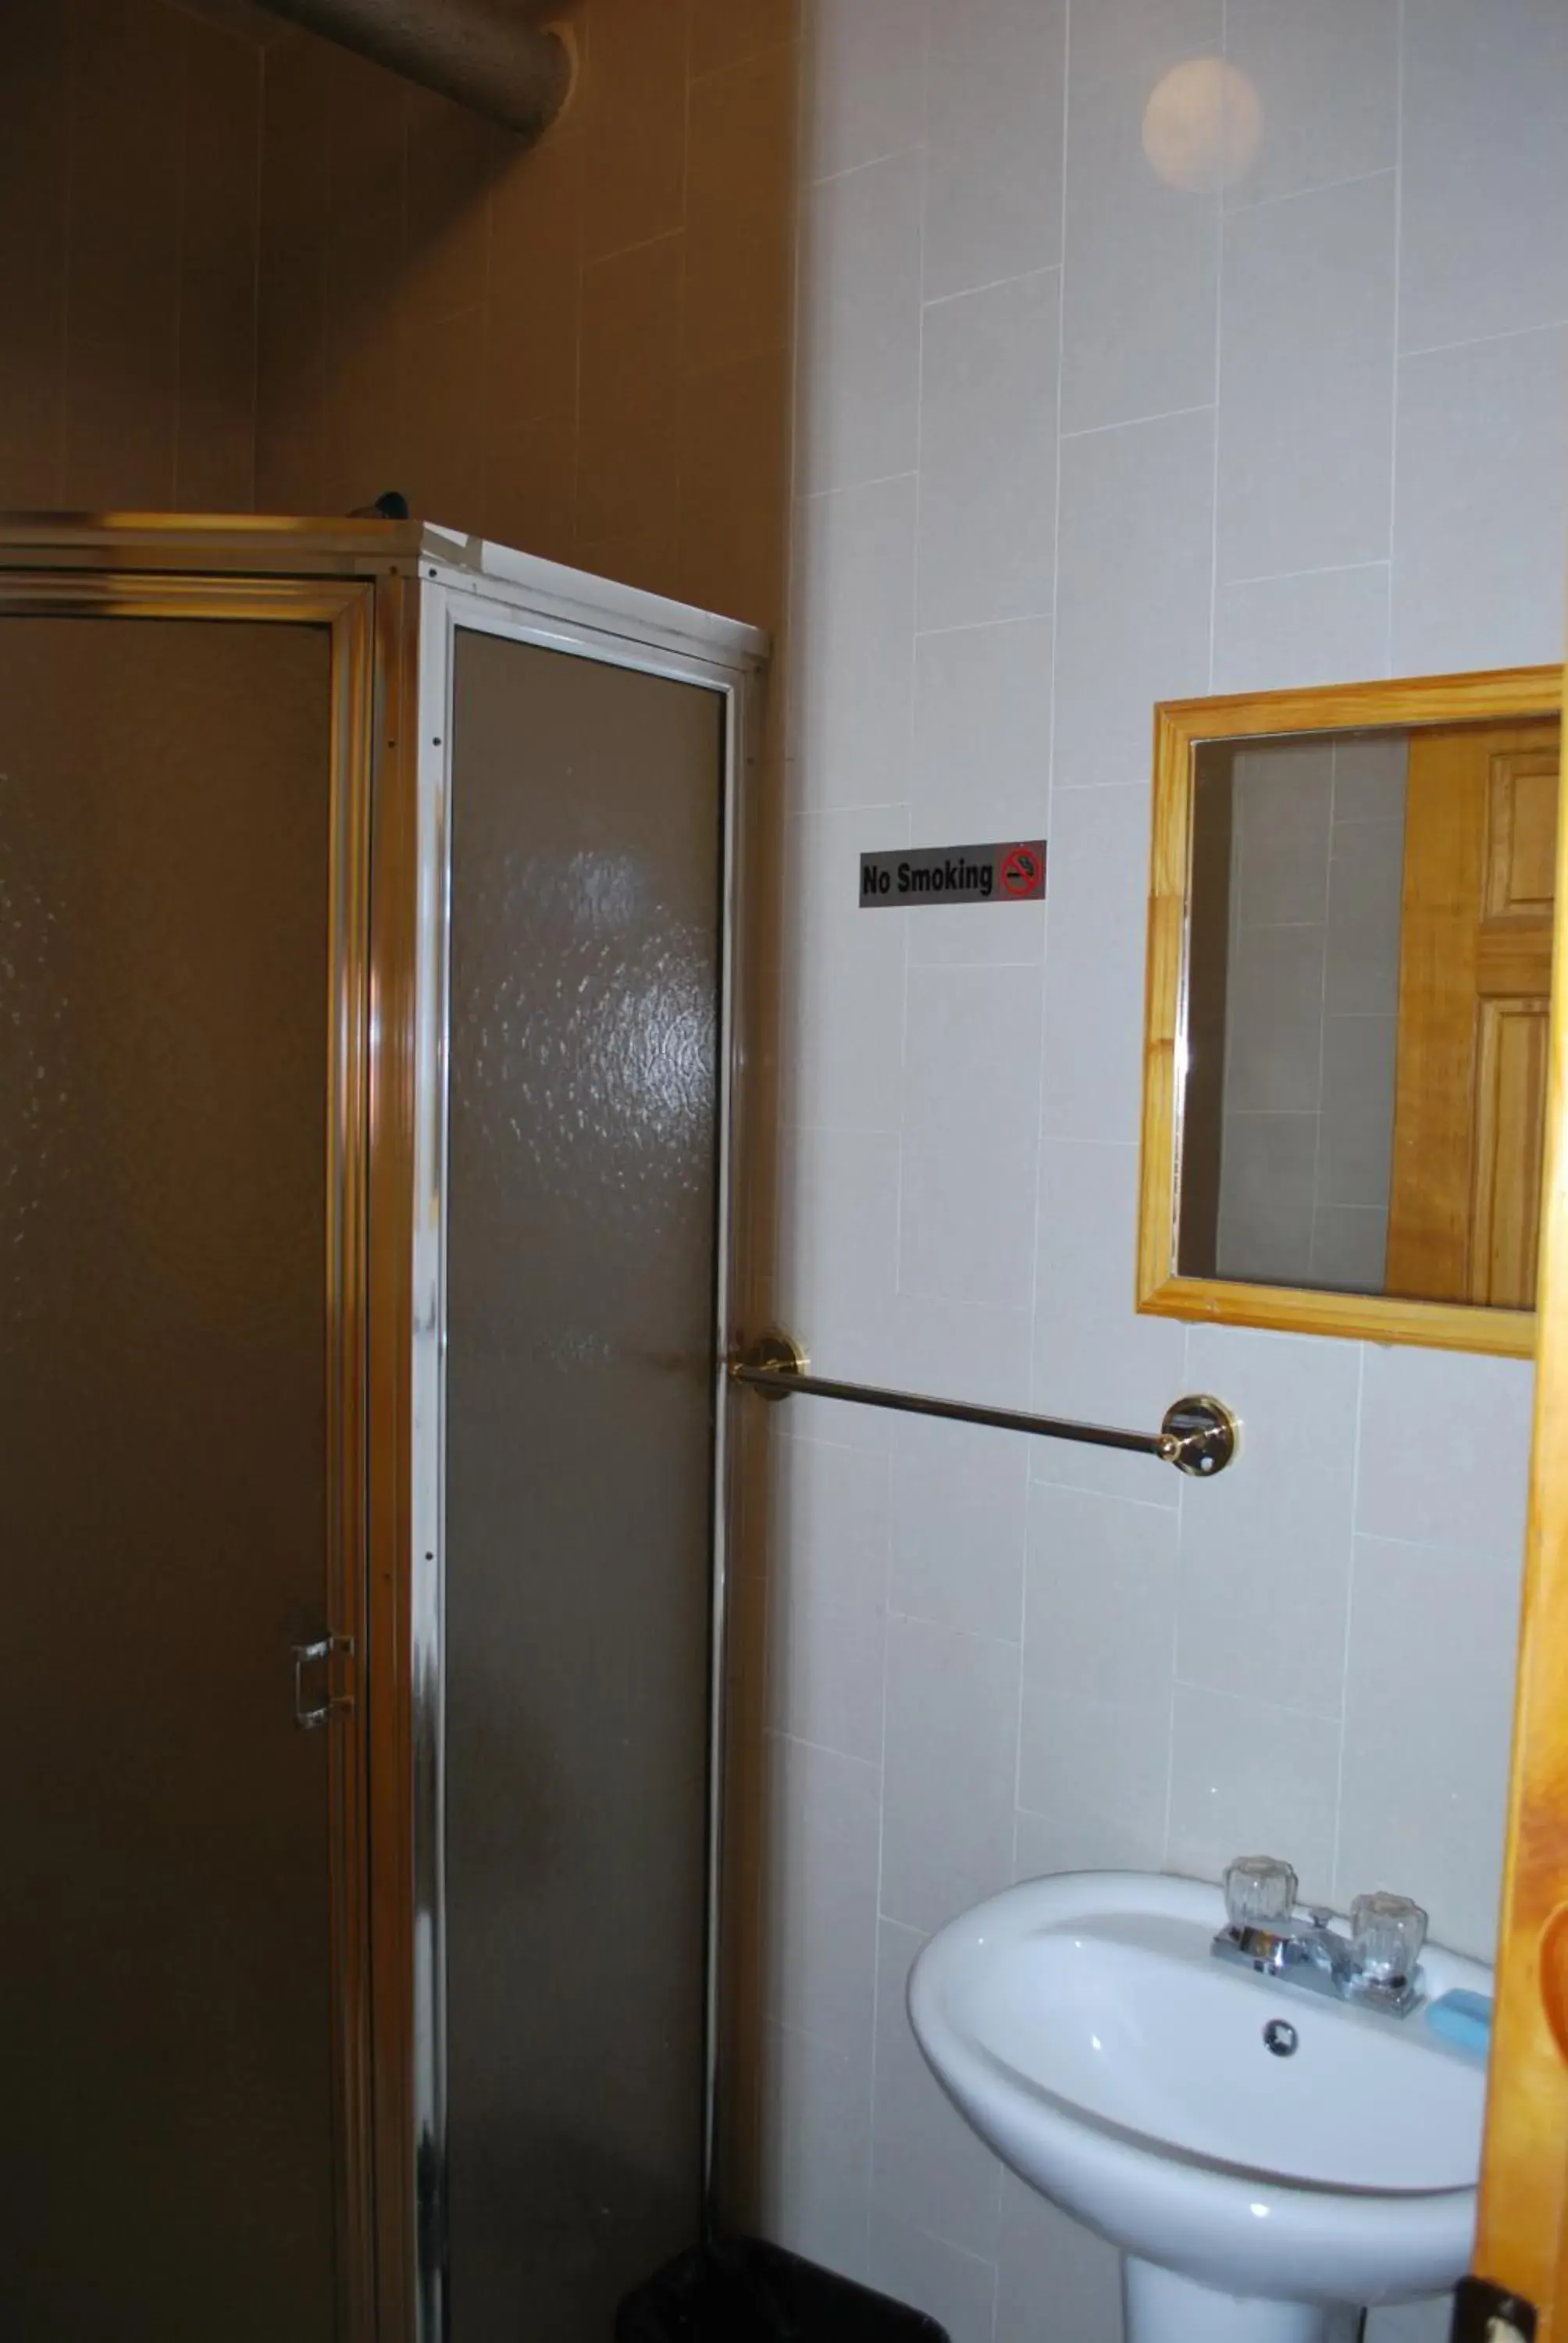 Bathroom in Bowery Grand Hotel